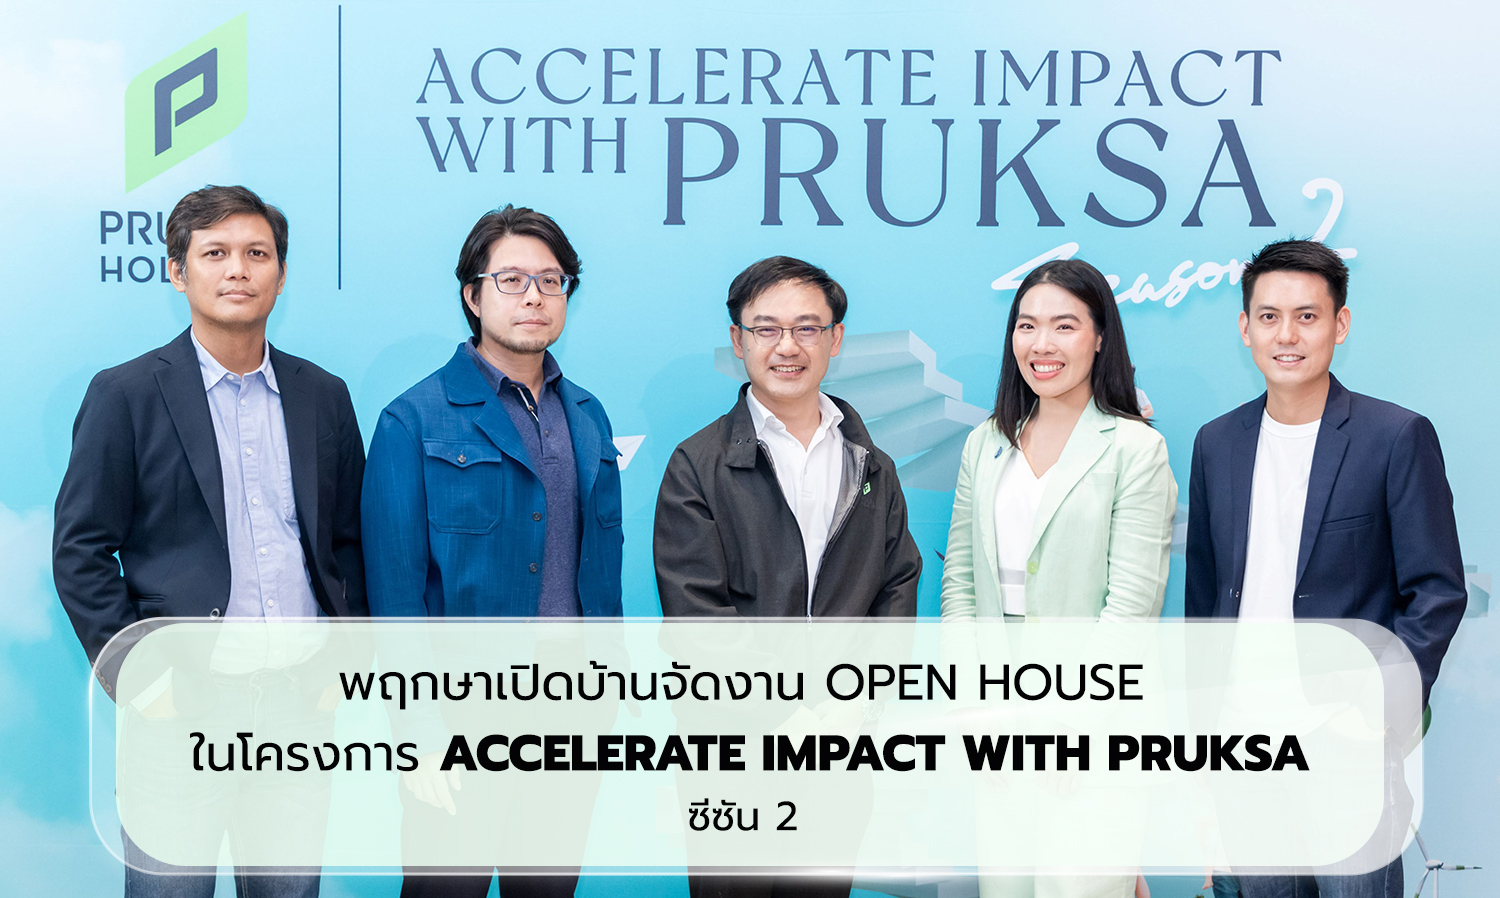 พฤกษาเปิดบ้านจัดงาน Open House ในโครงการ Accelerate Impact with PRUKSA ซีซัน 2  